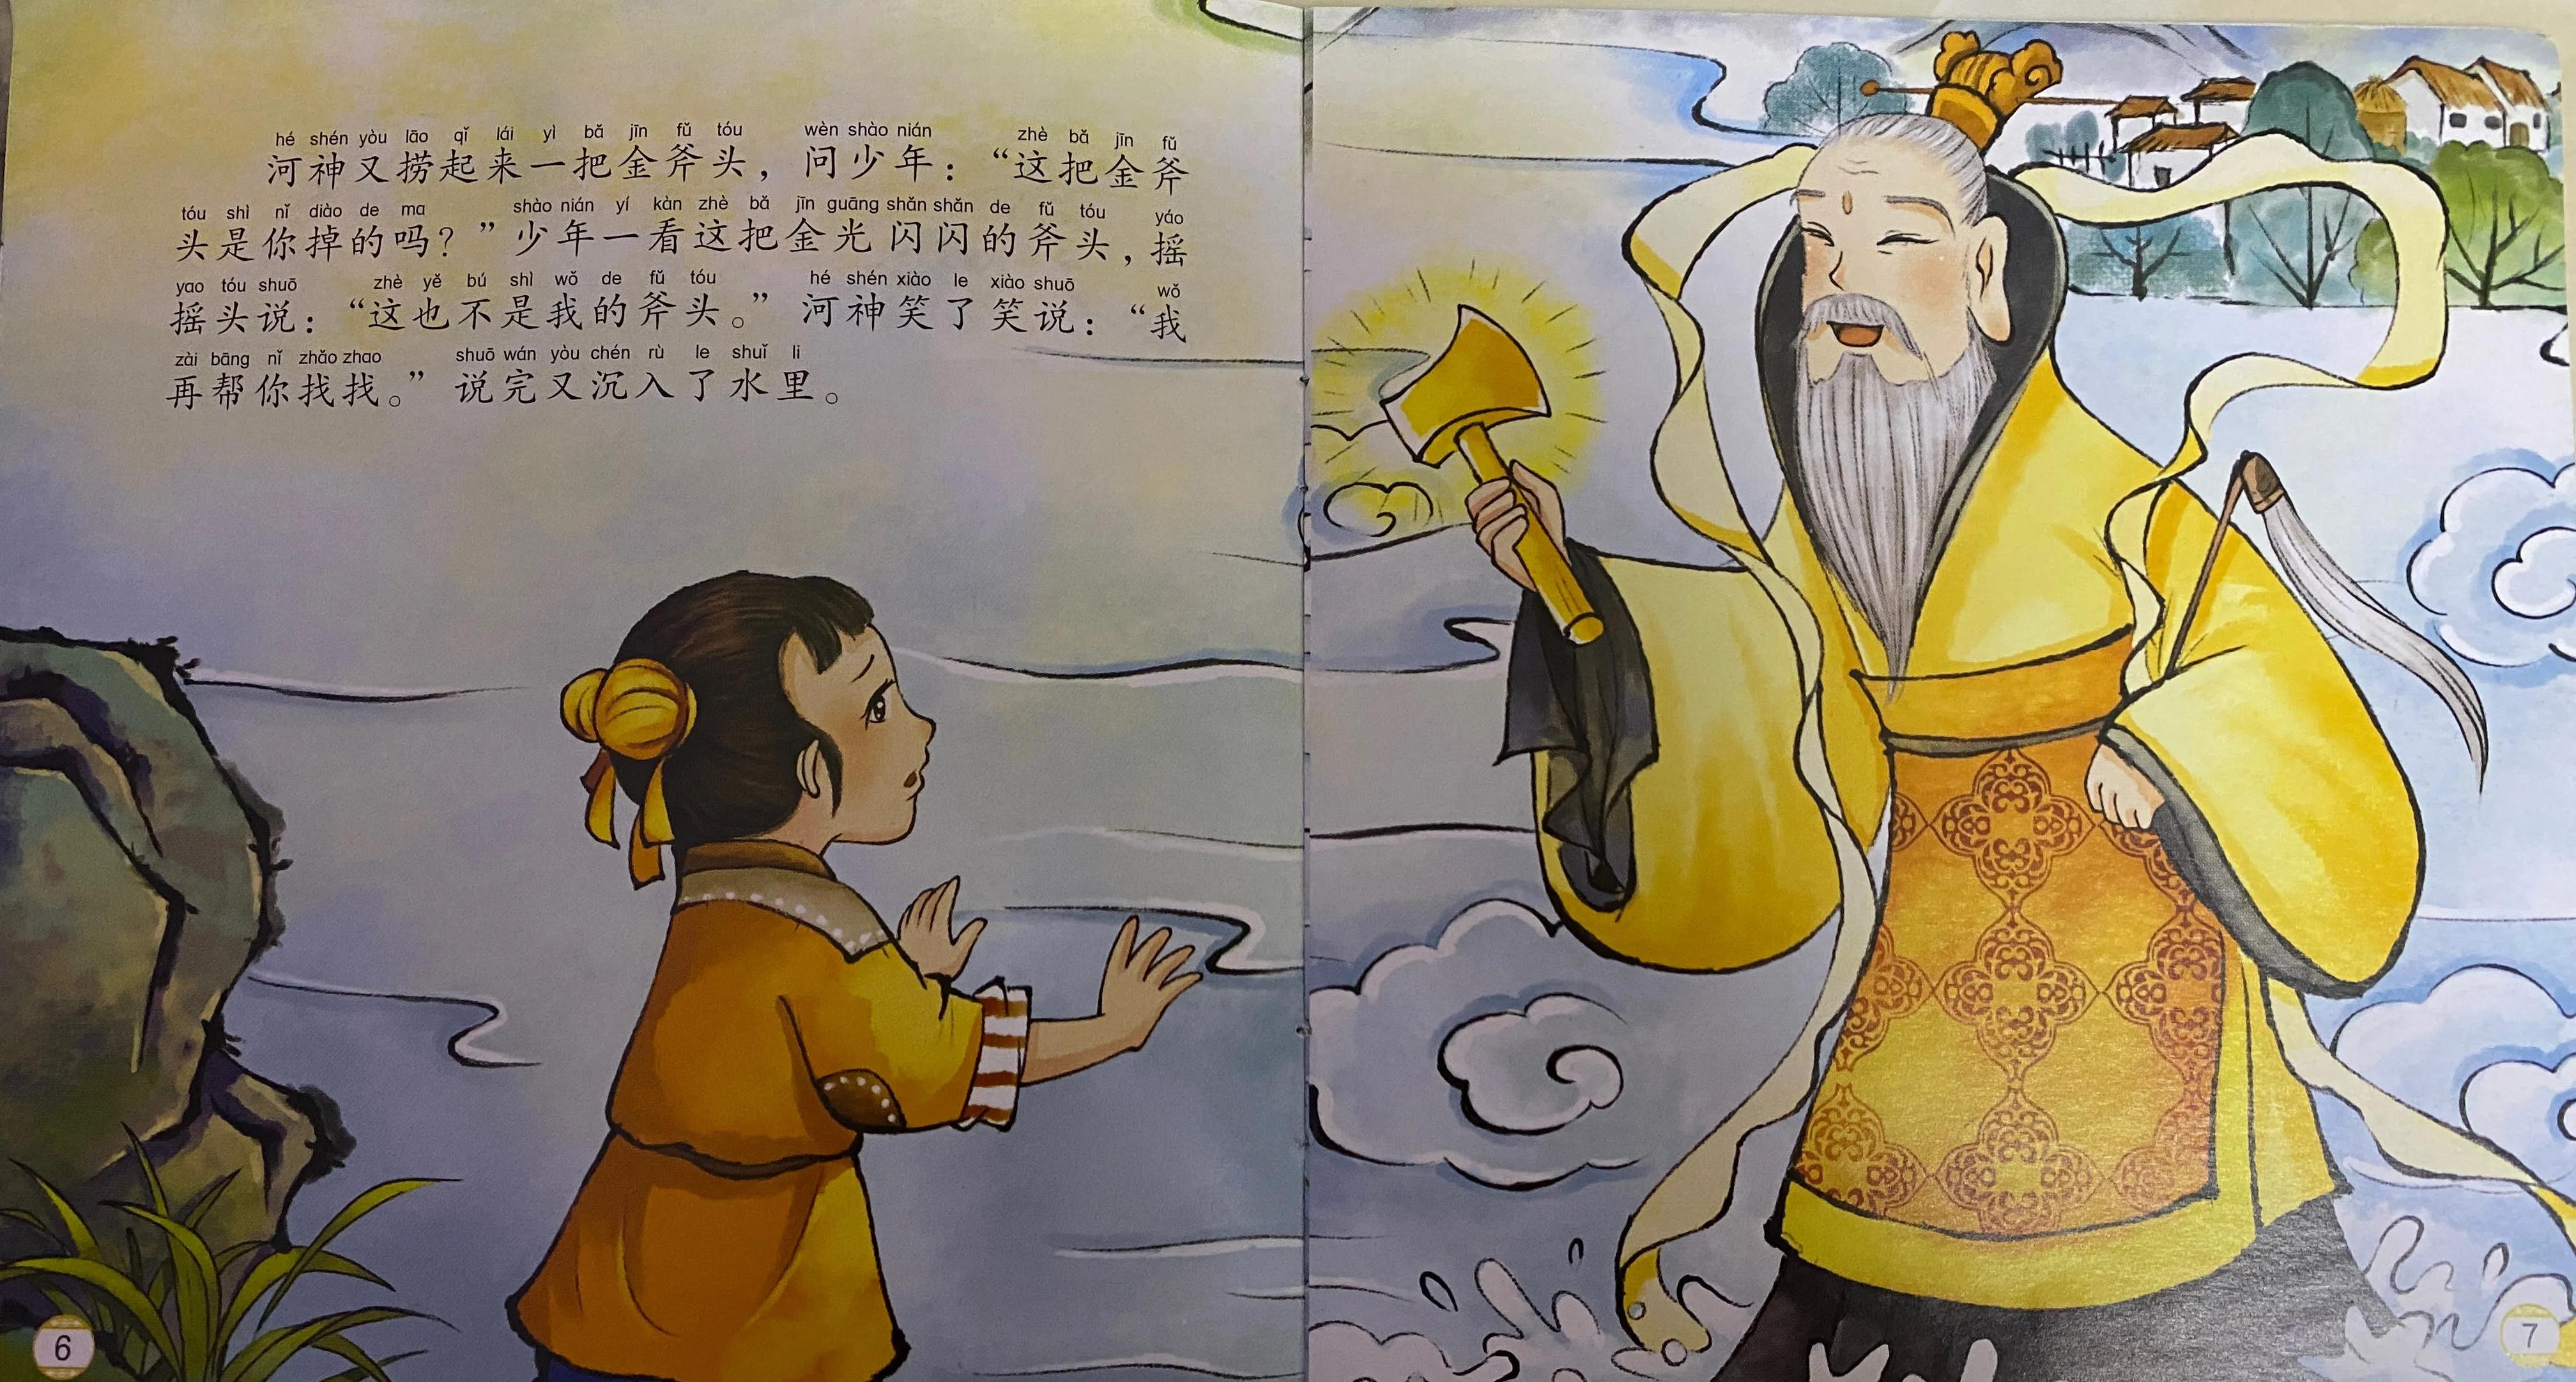 中国经典成语故事《金斧头银斧头》的告诉我们什么道理